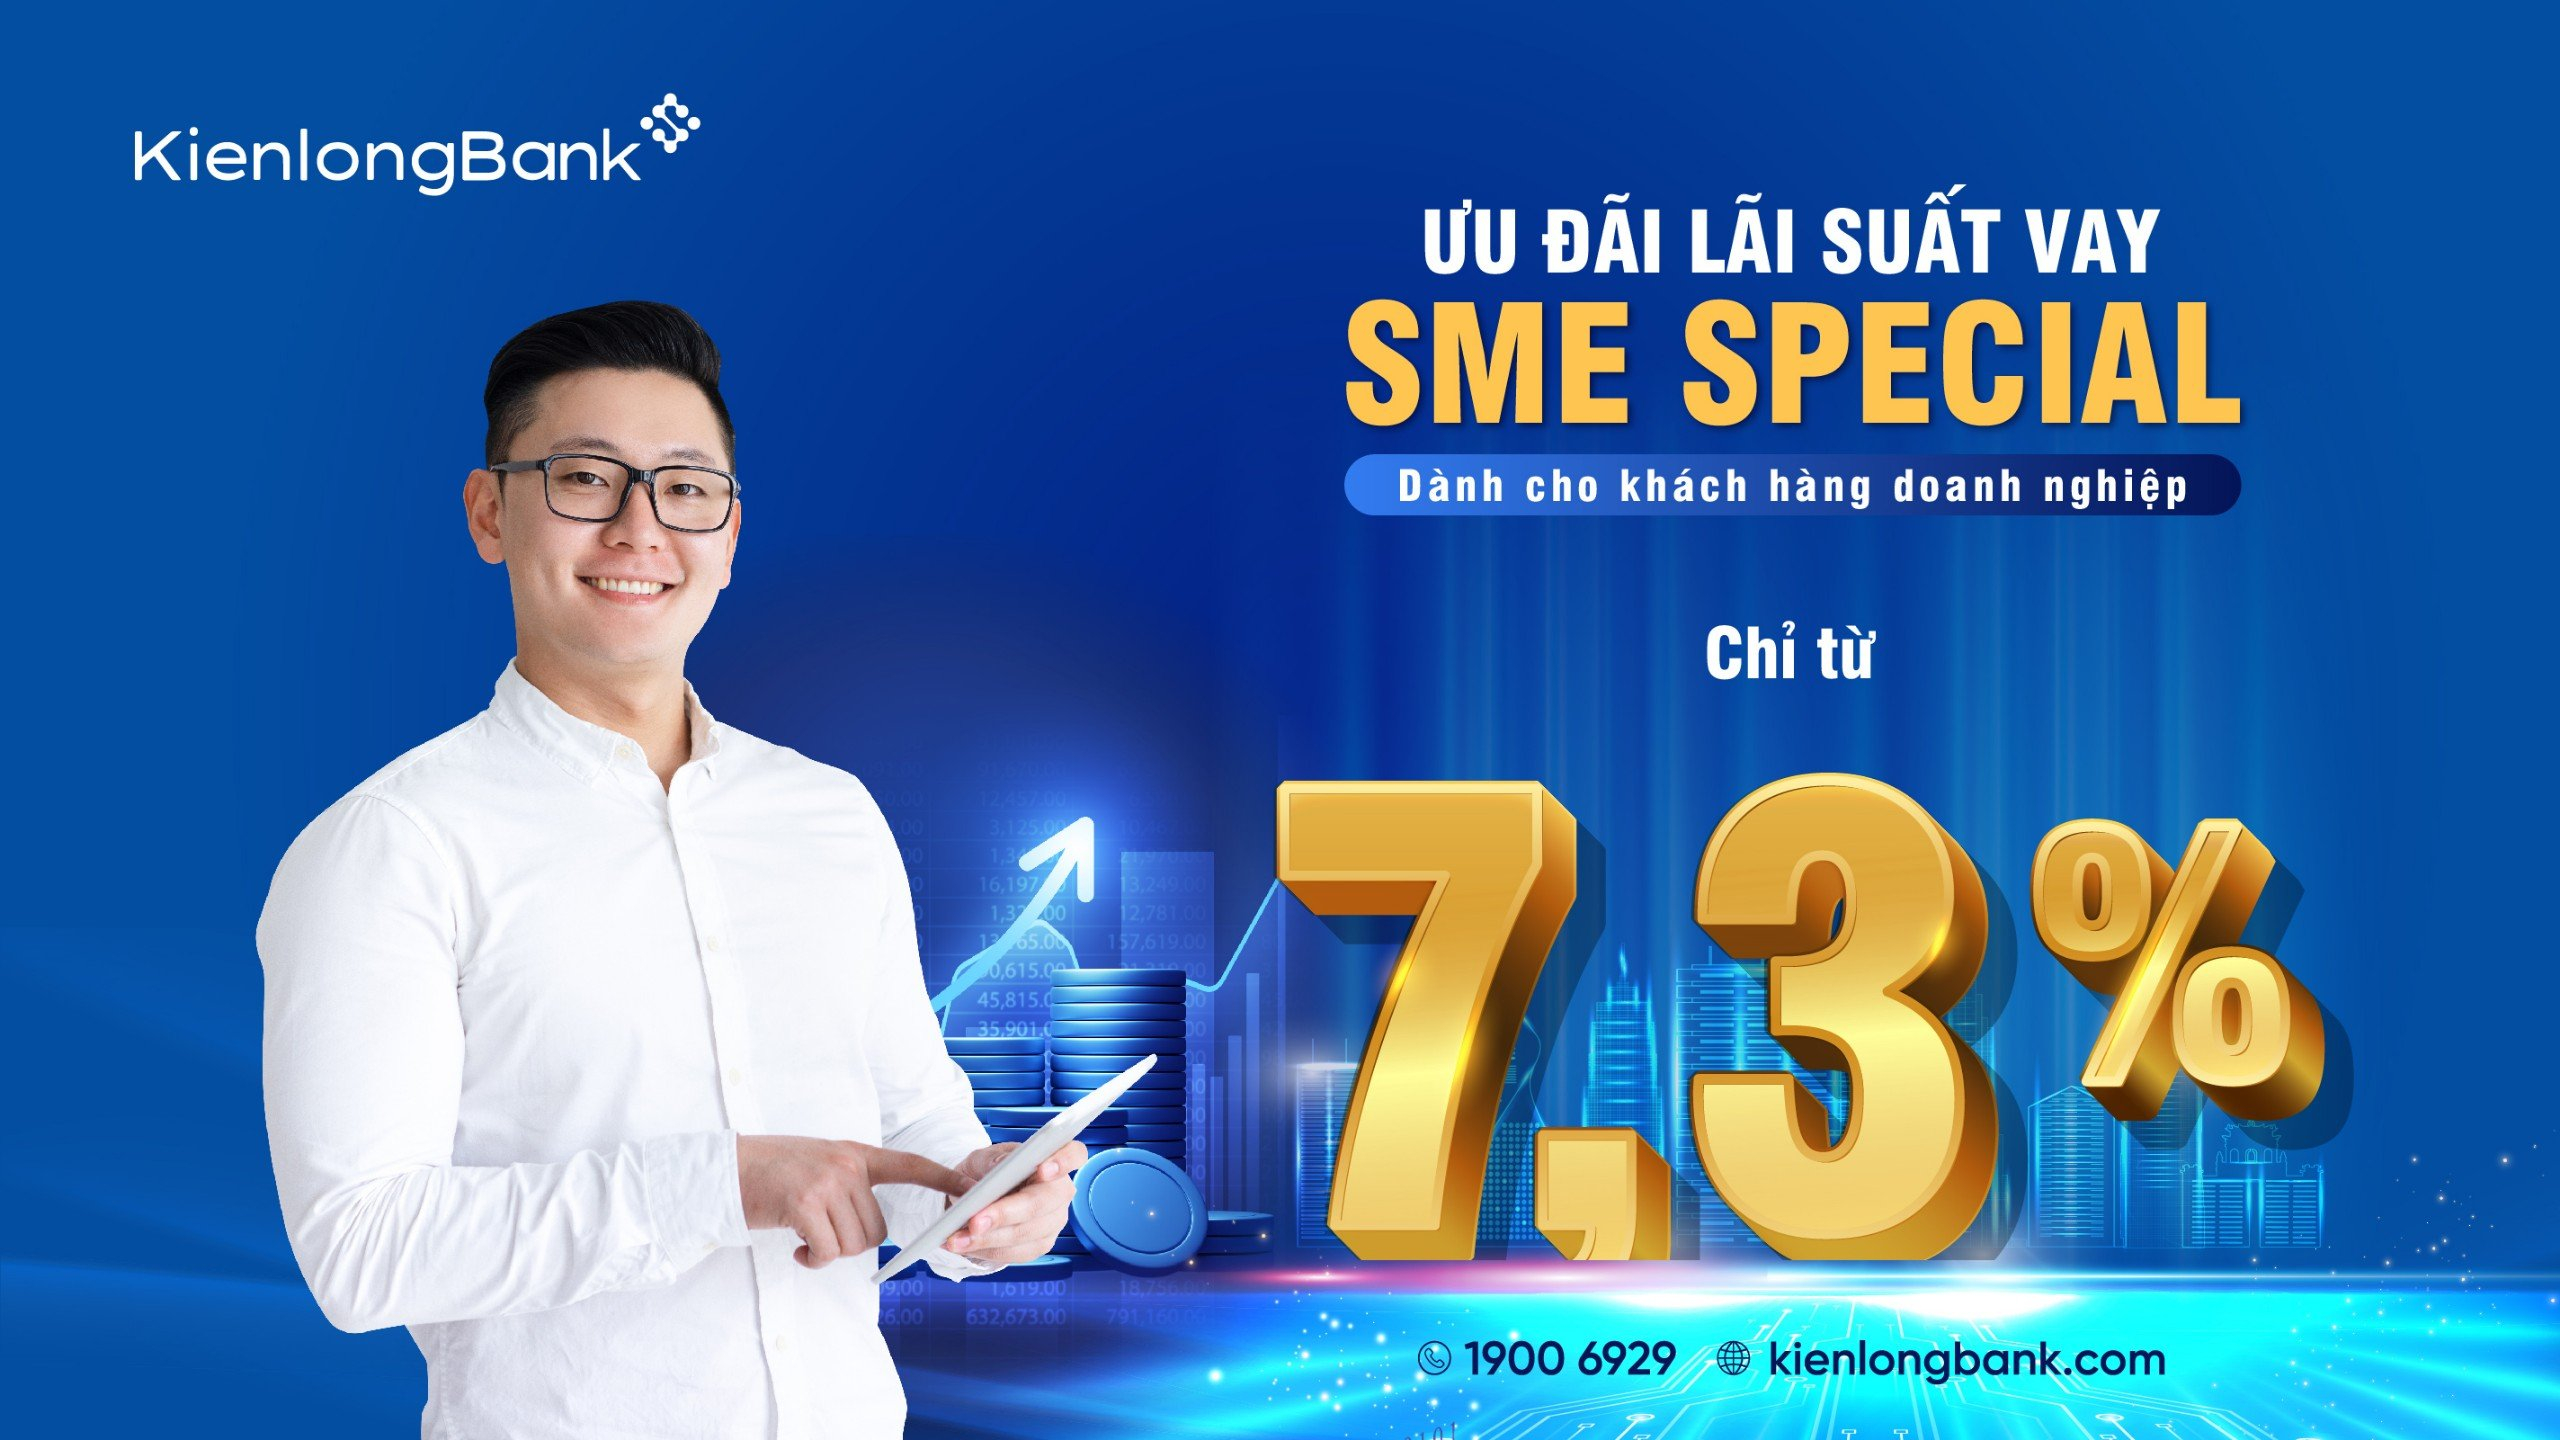 KienlongBank dành riêng mức lãi suất ưu đãi chỉ từ 7,3%/năm cho các doanh nghiệp  SME vay bổ sung vốn lưu động trong ngắn hạn